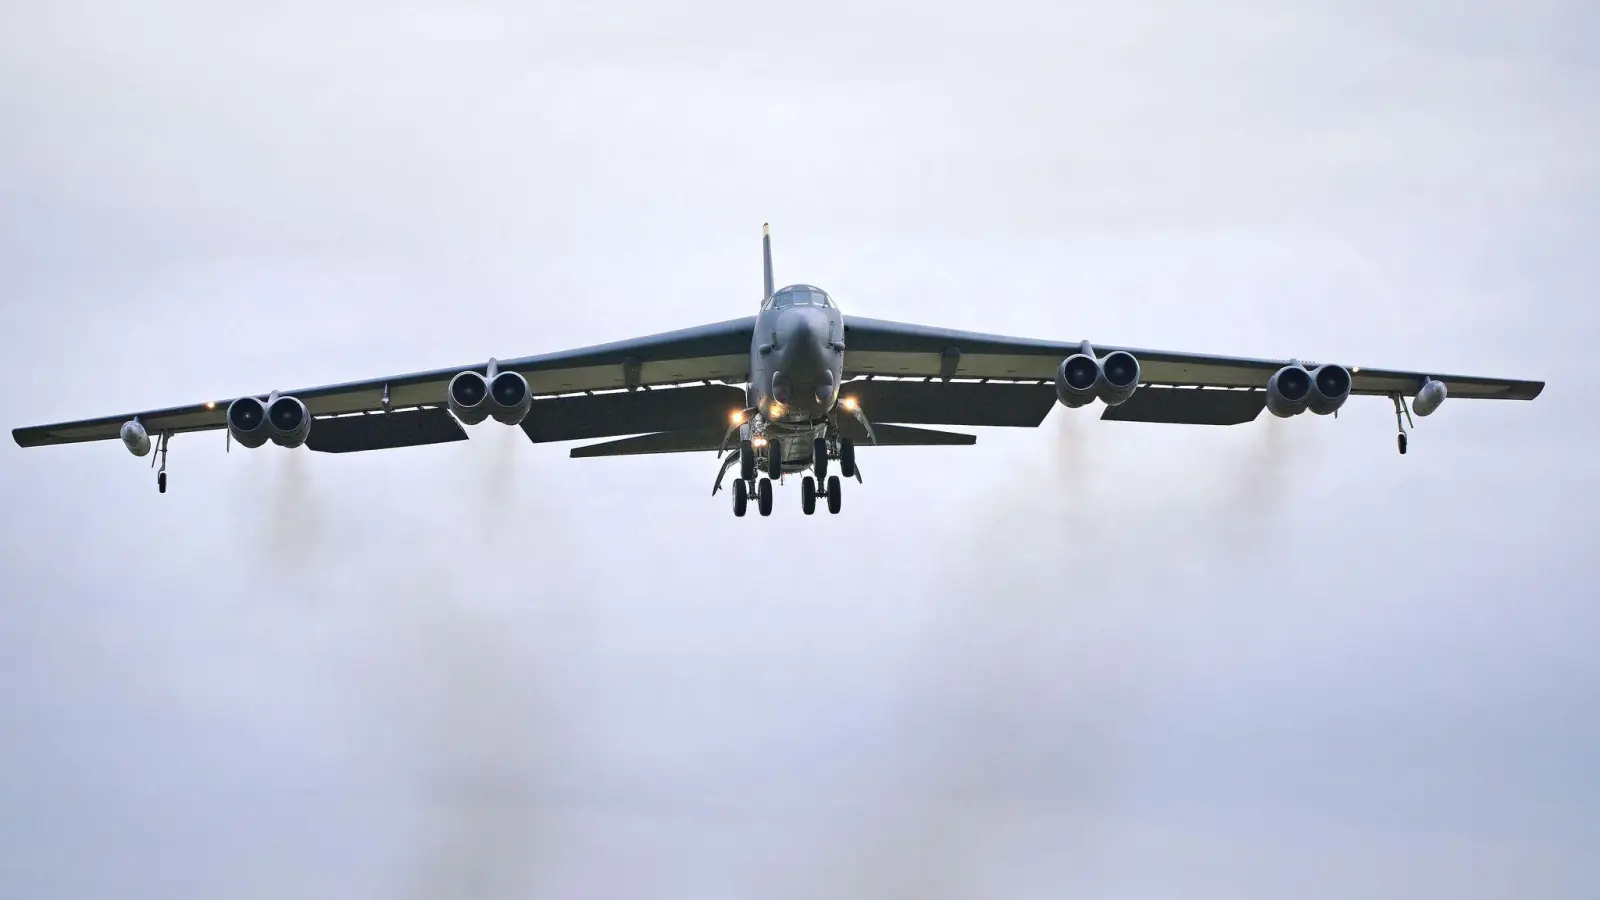 An der Übung „Steadfast Noon“ sind in den kommenden eineinhalb Wochen etwa 60 Flugzeuge beteiligt - darunter moderne Kampfjets, aber auch Überwachungs- und Tankflugzeuge sowie Langstreckenbomber vom Typ B-52. (Foto: Ben Birchall/PA Wire/dpa)